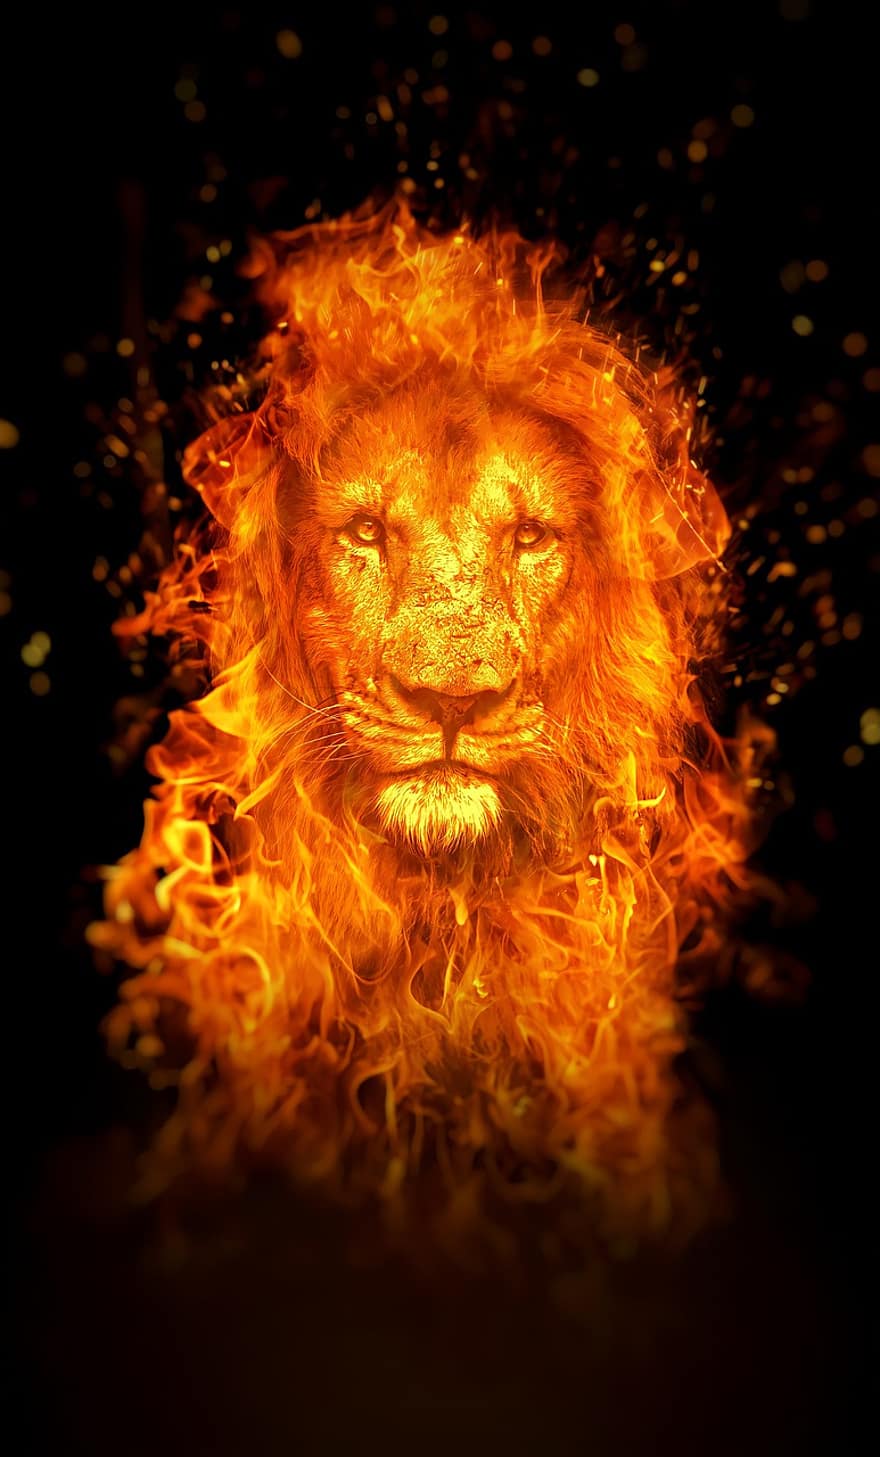 leeuw, brand, behang, fotomanipulatie, fotobewerking, surrealistische, digitale kunst, vlam, Vlammende leeuw, Vlammend dier